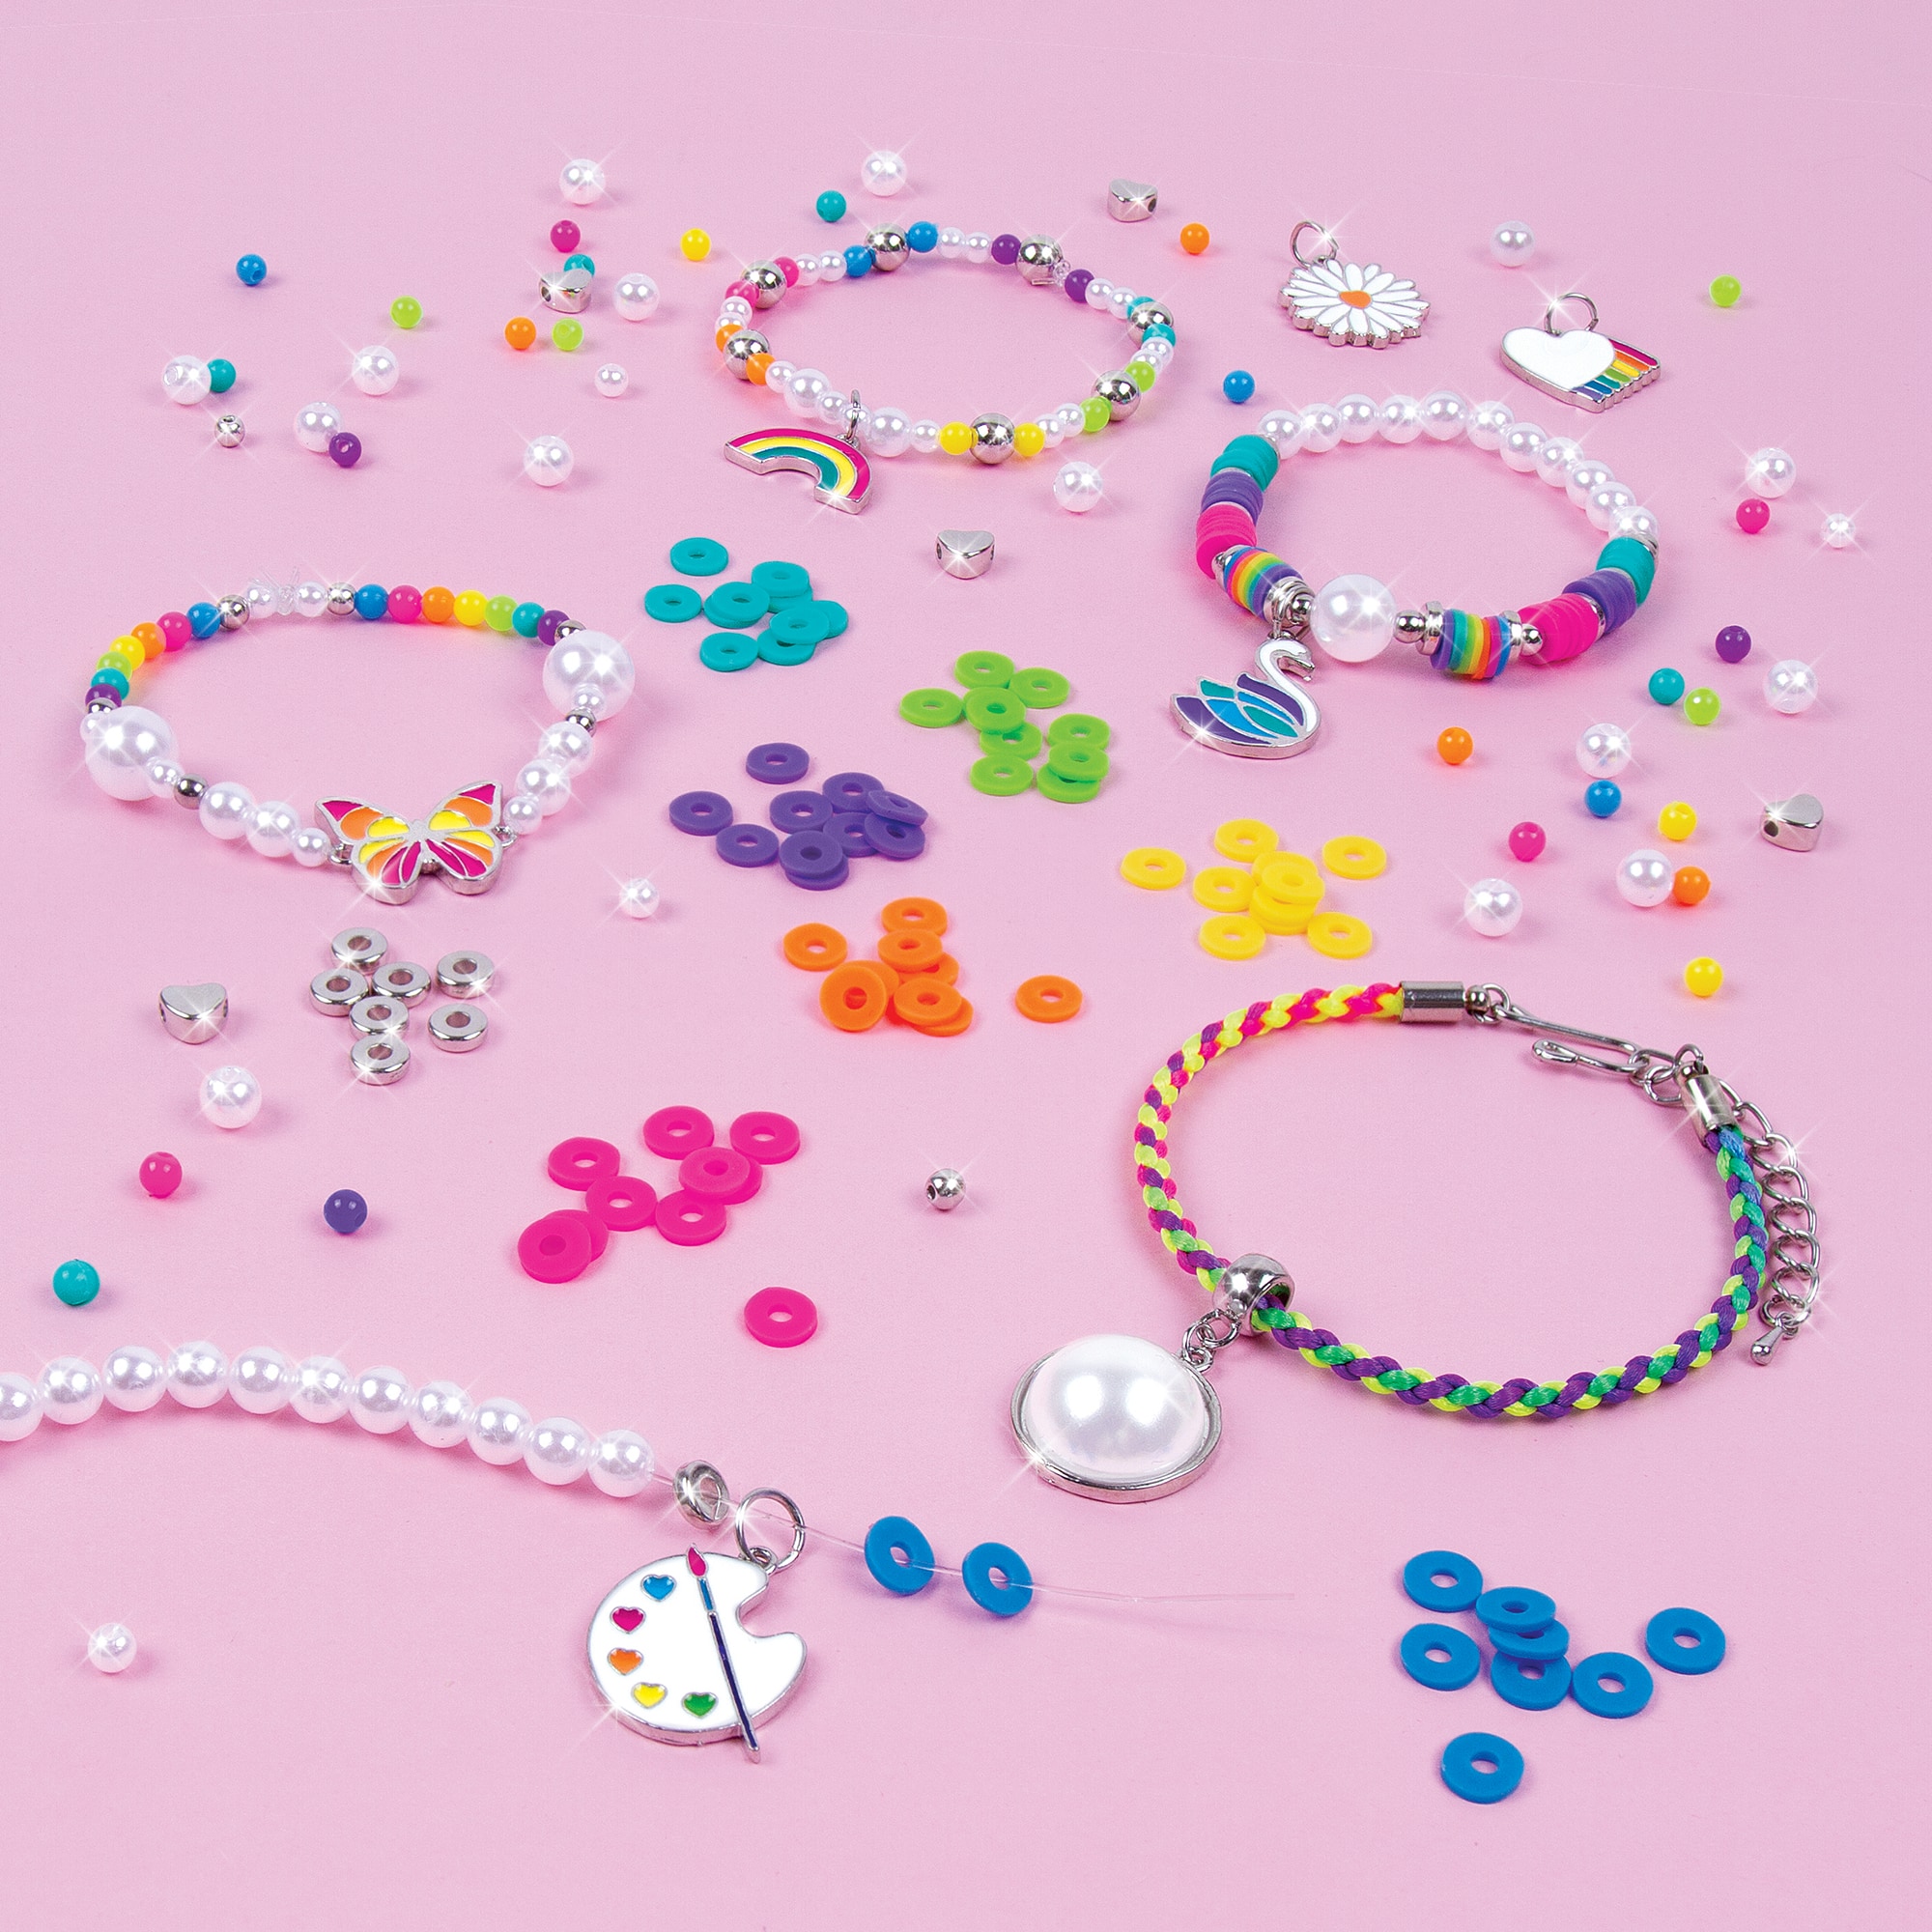 Make It Real&#x2122; Rainbows &#x26; Pearls DIY Jewelry Kit